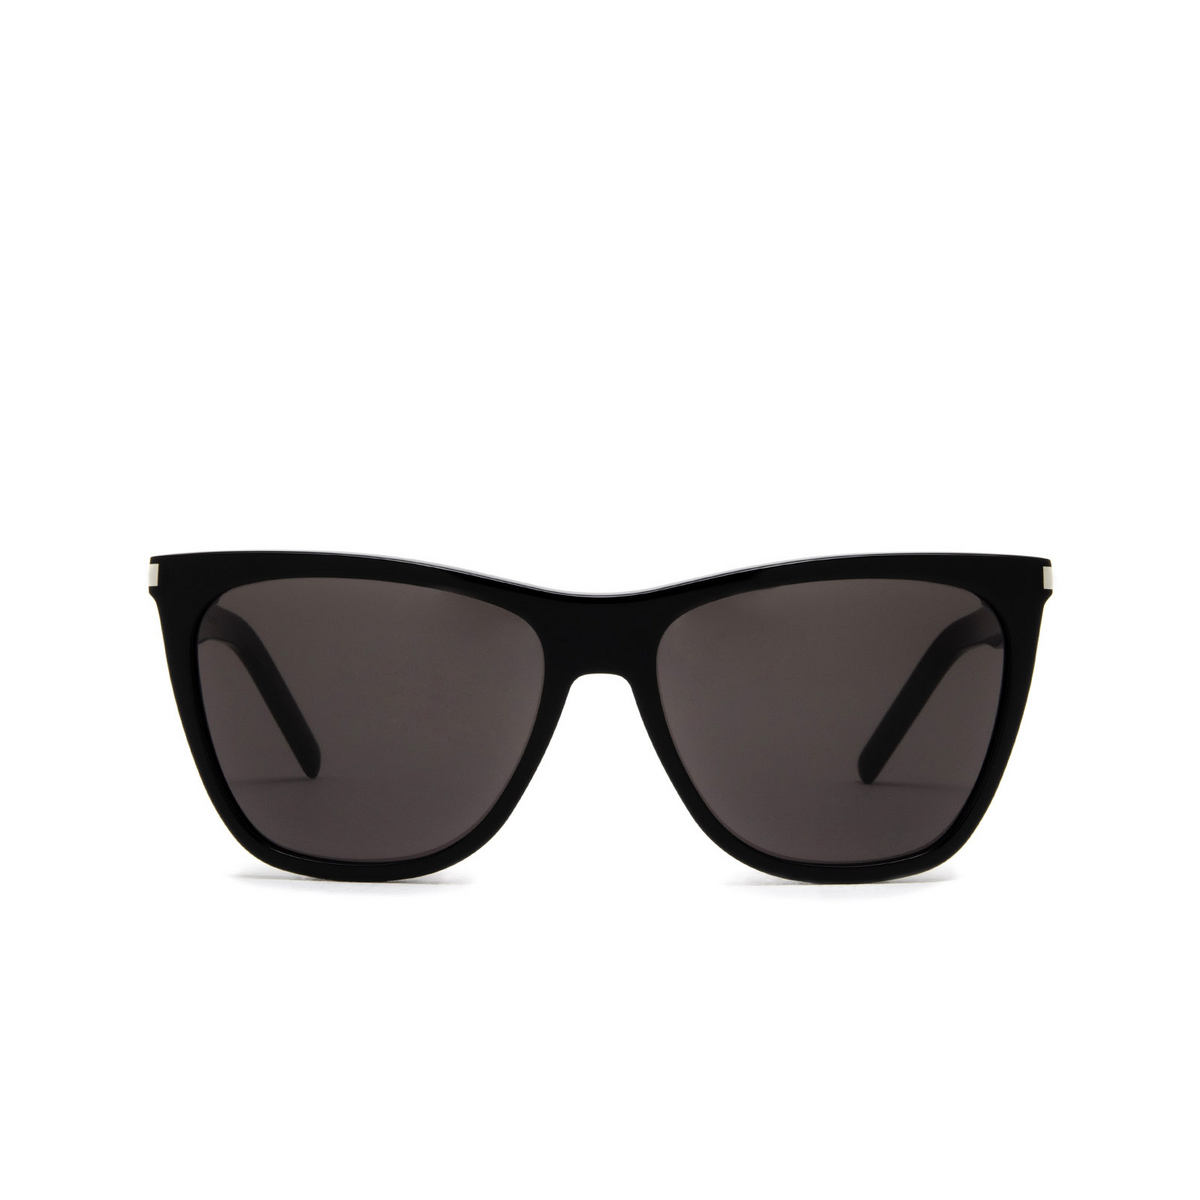 Saint Laurent® Cat-eye Sunglasses: SL 526 color Black 001 - front view.